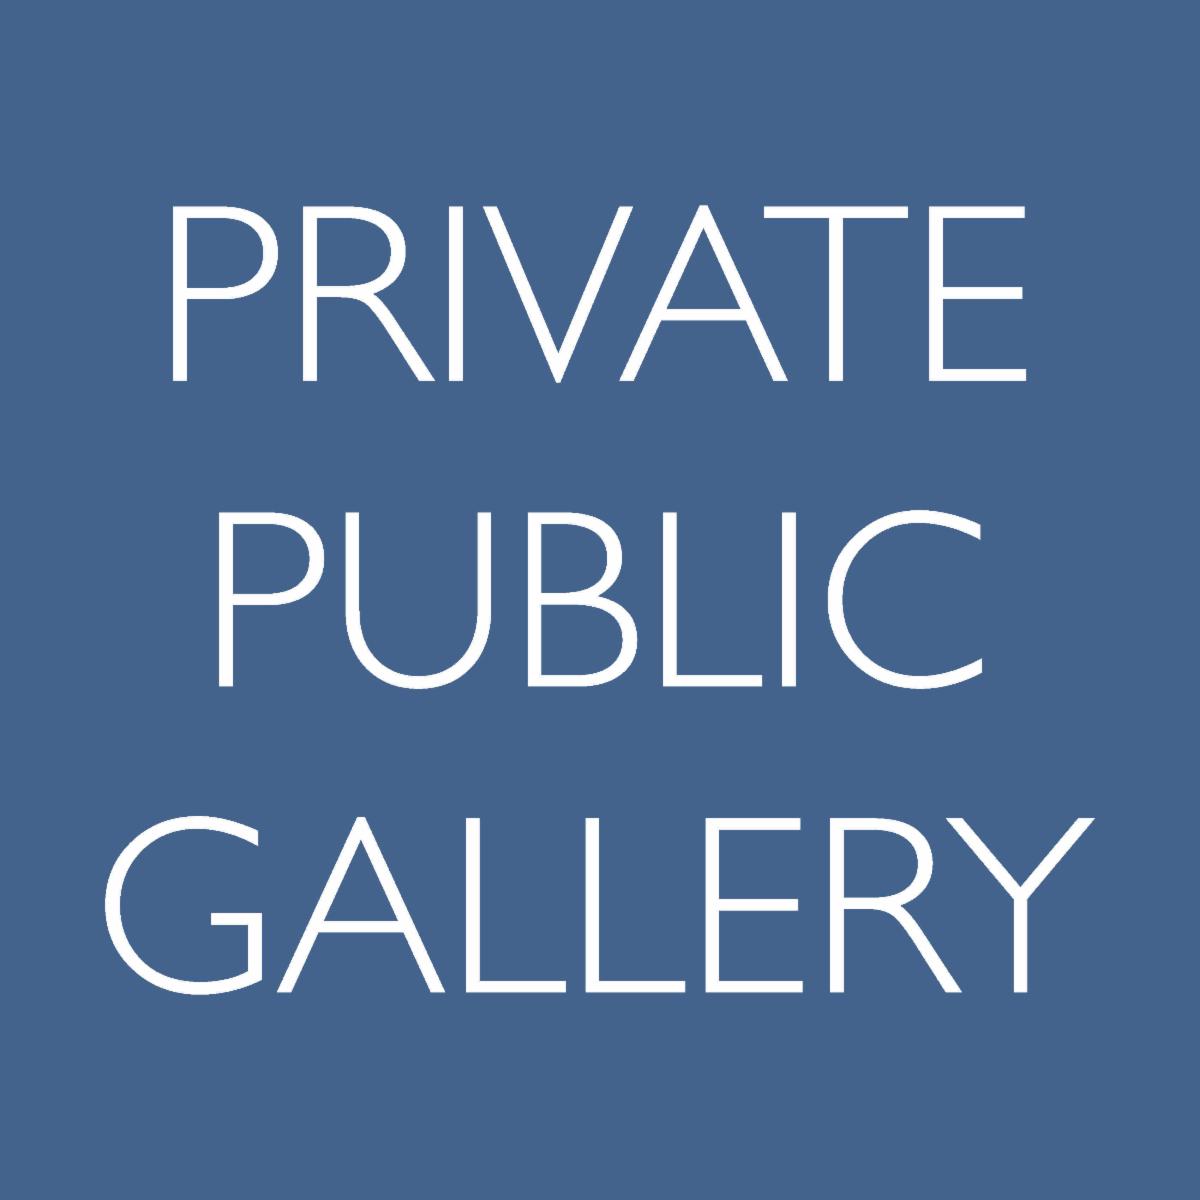 Public Private Gallery